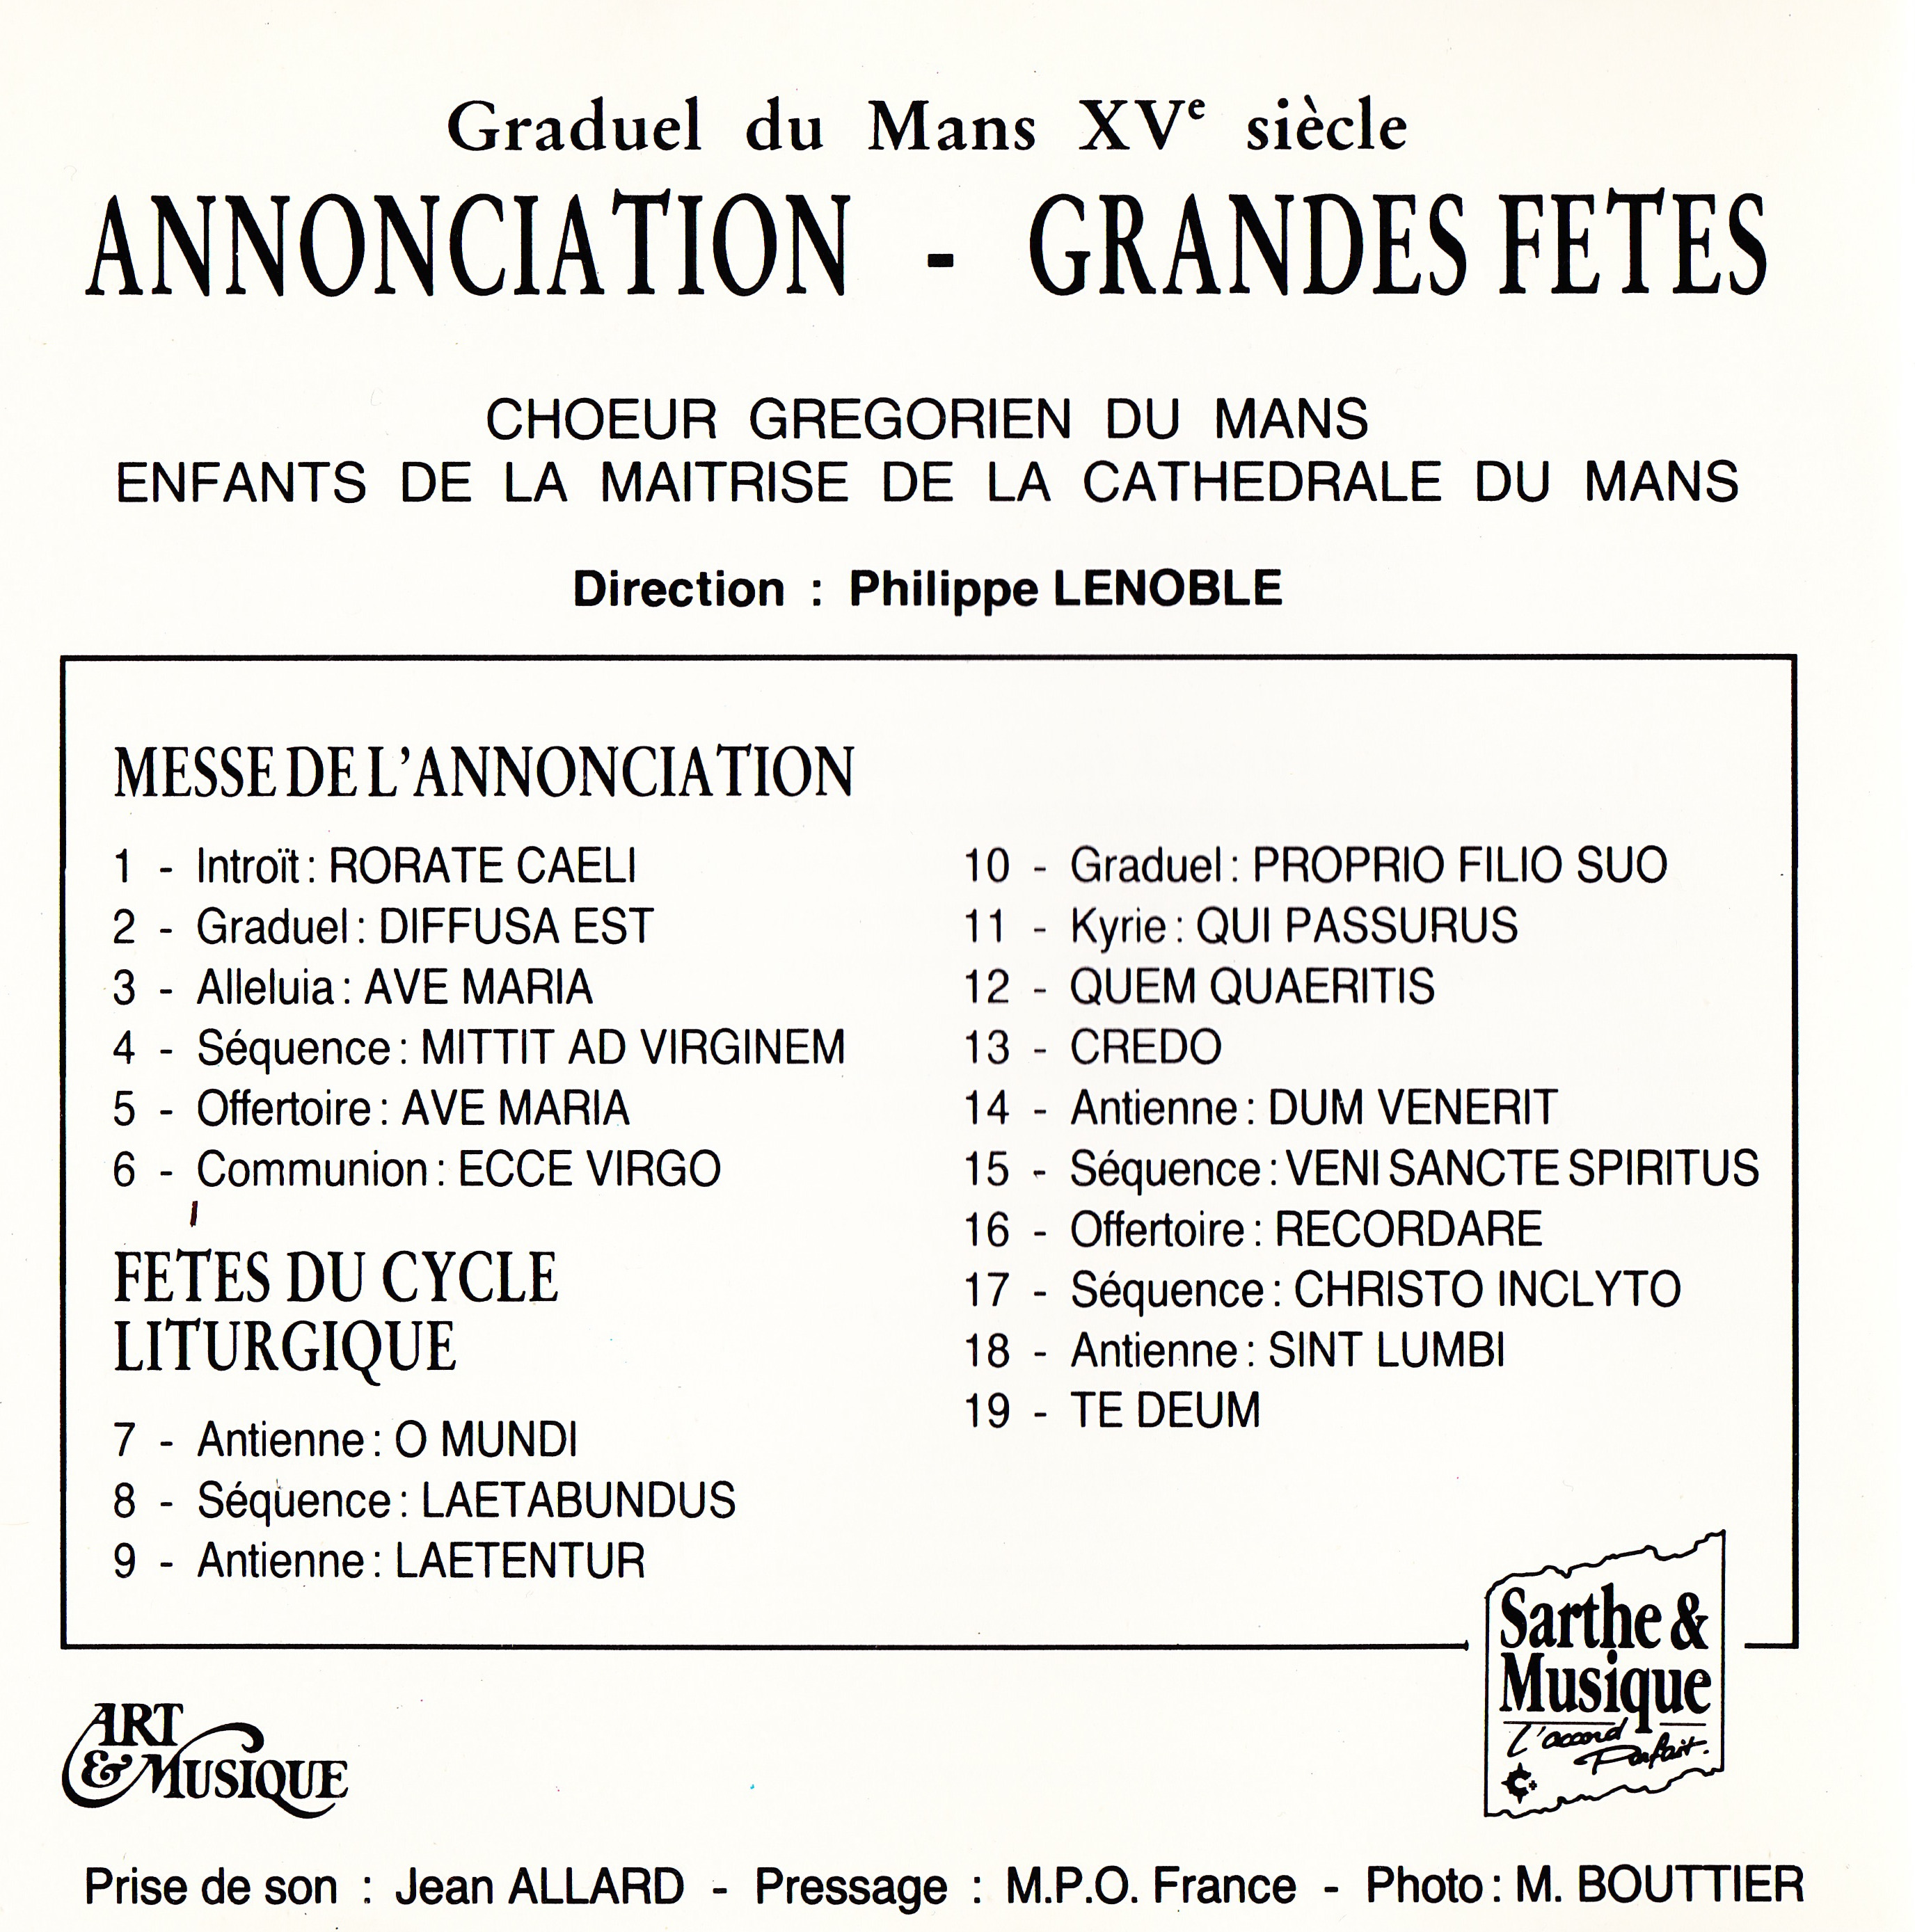 Graduel du Mans - Annonciation_Grandes Fêtes_V.jpg